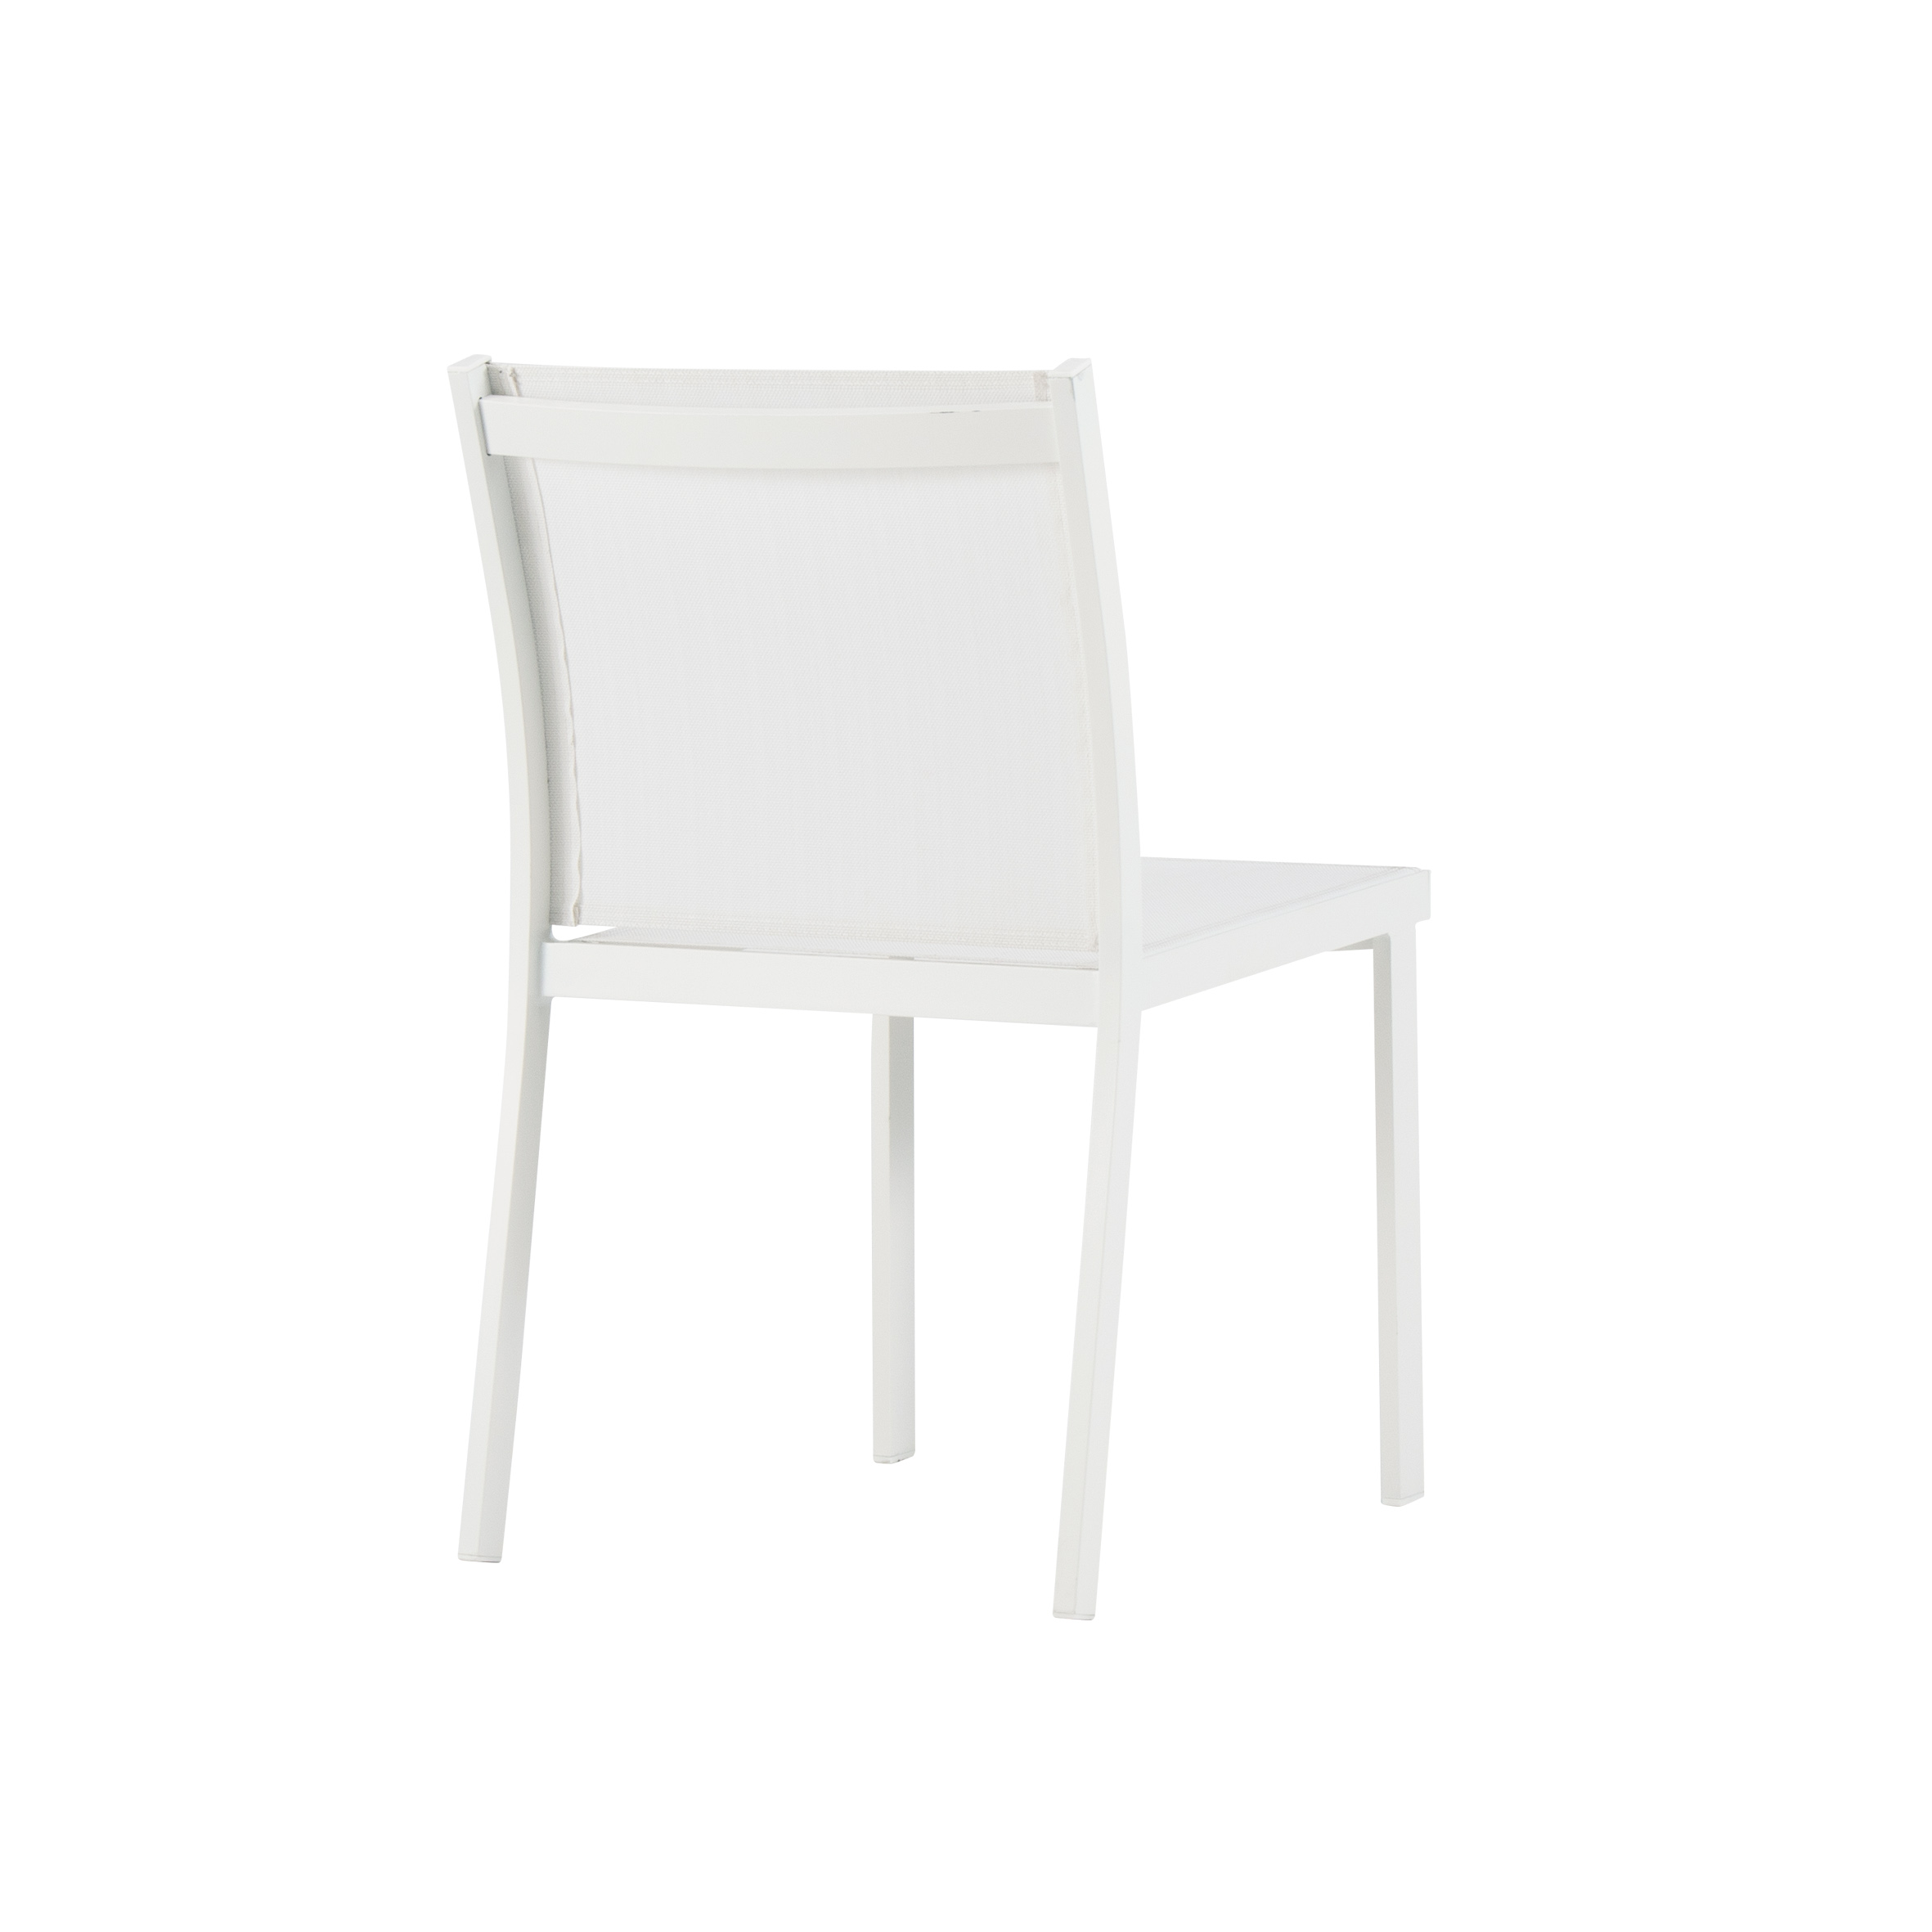 Kotka tekstilna stolica bez ruku S4